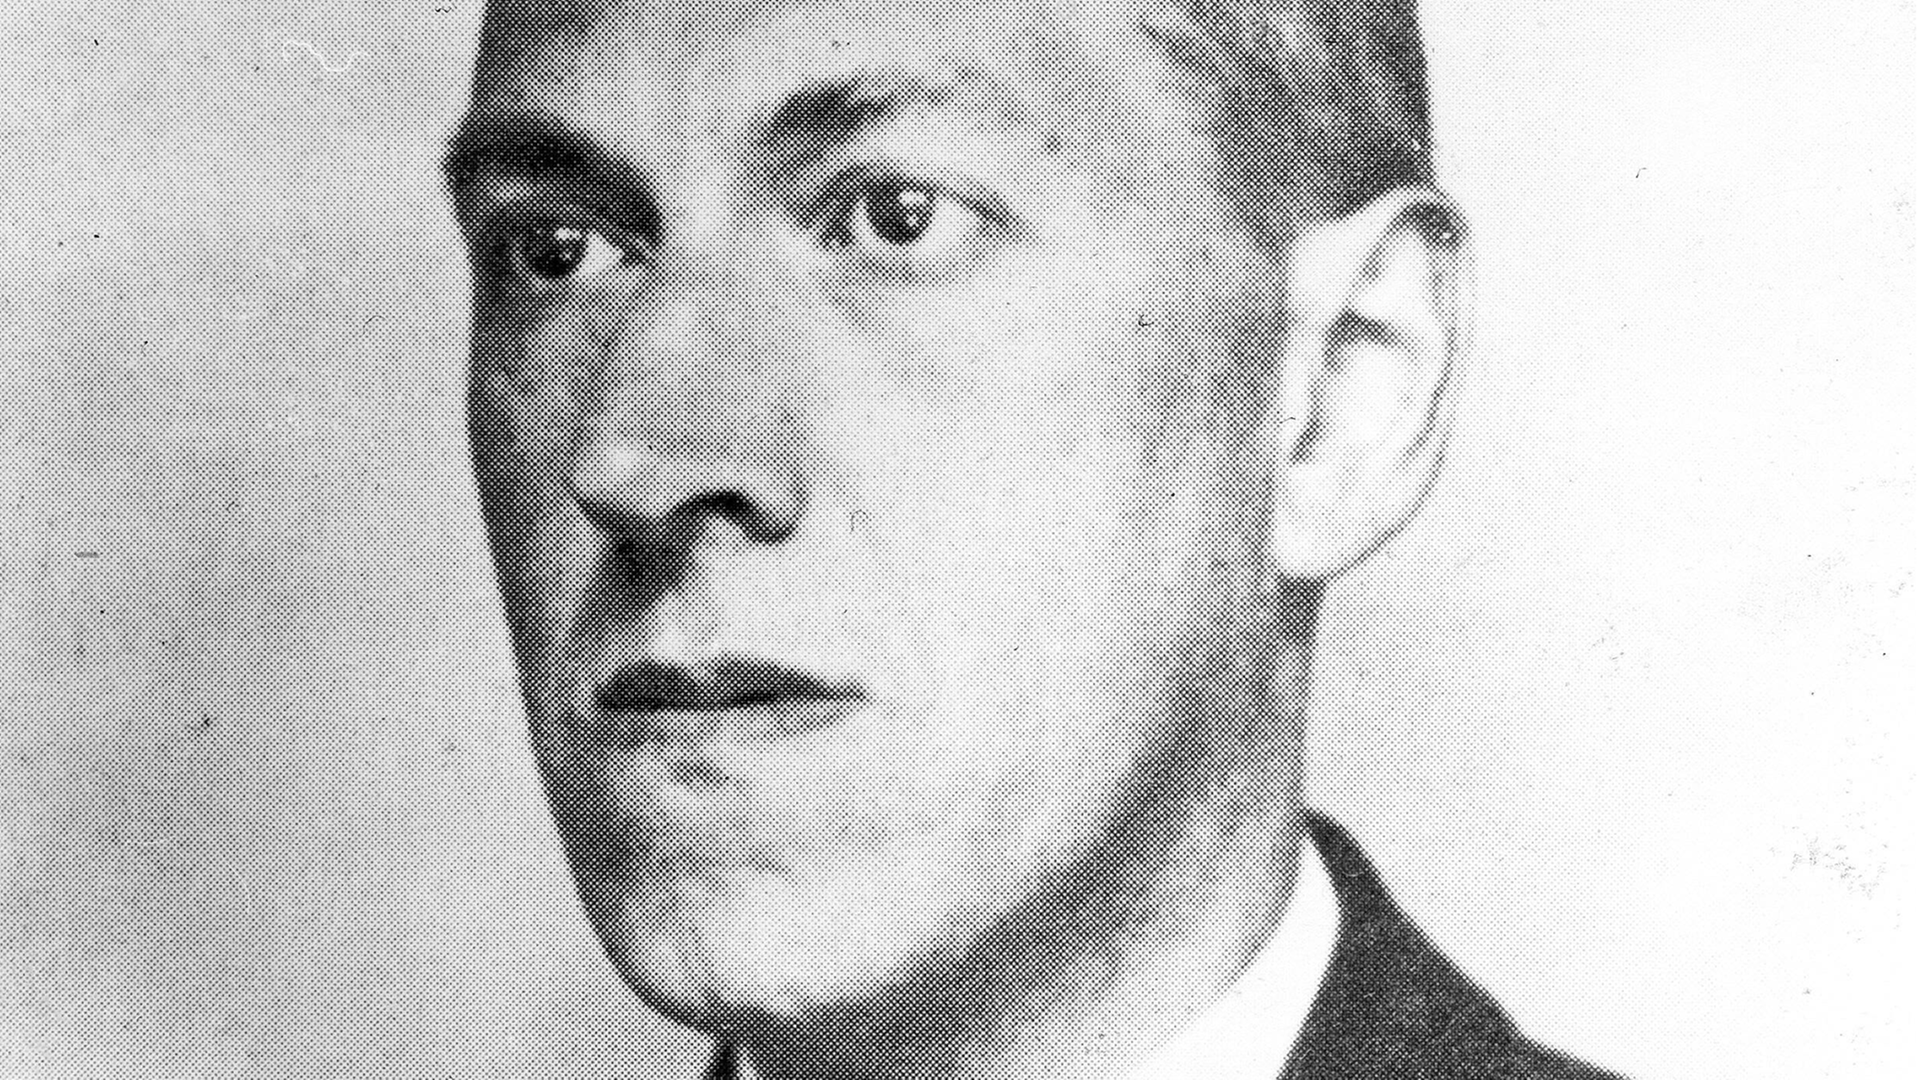 Der Horror-Schriftsteller H.P. Lovecraft